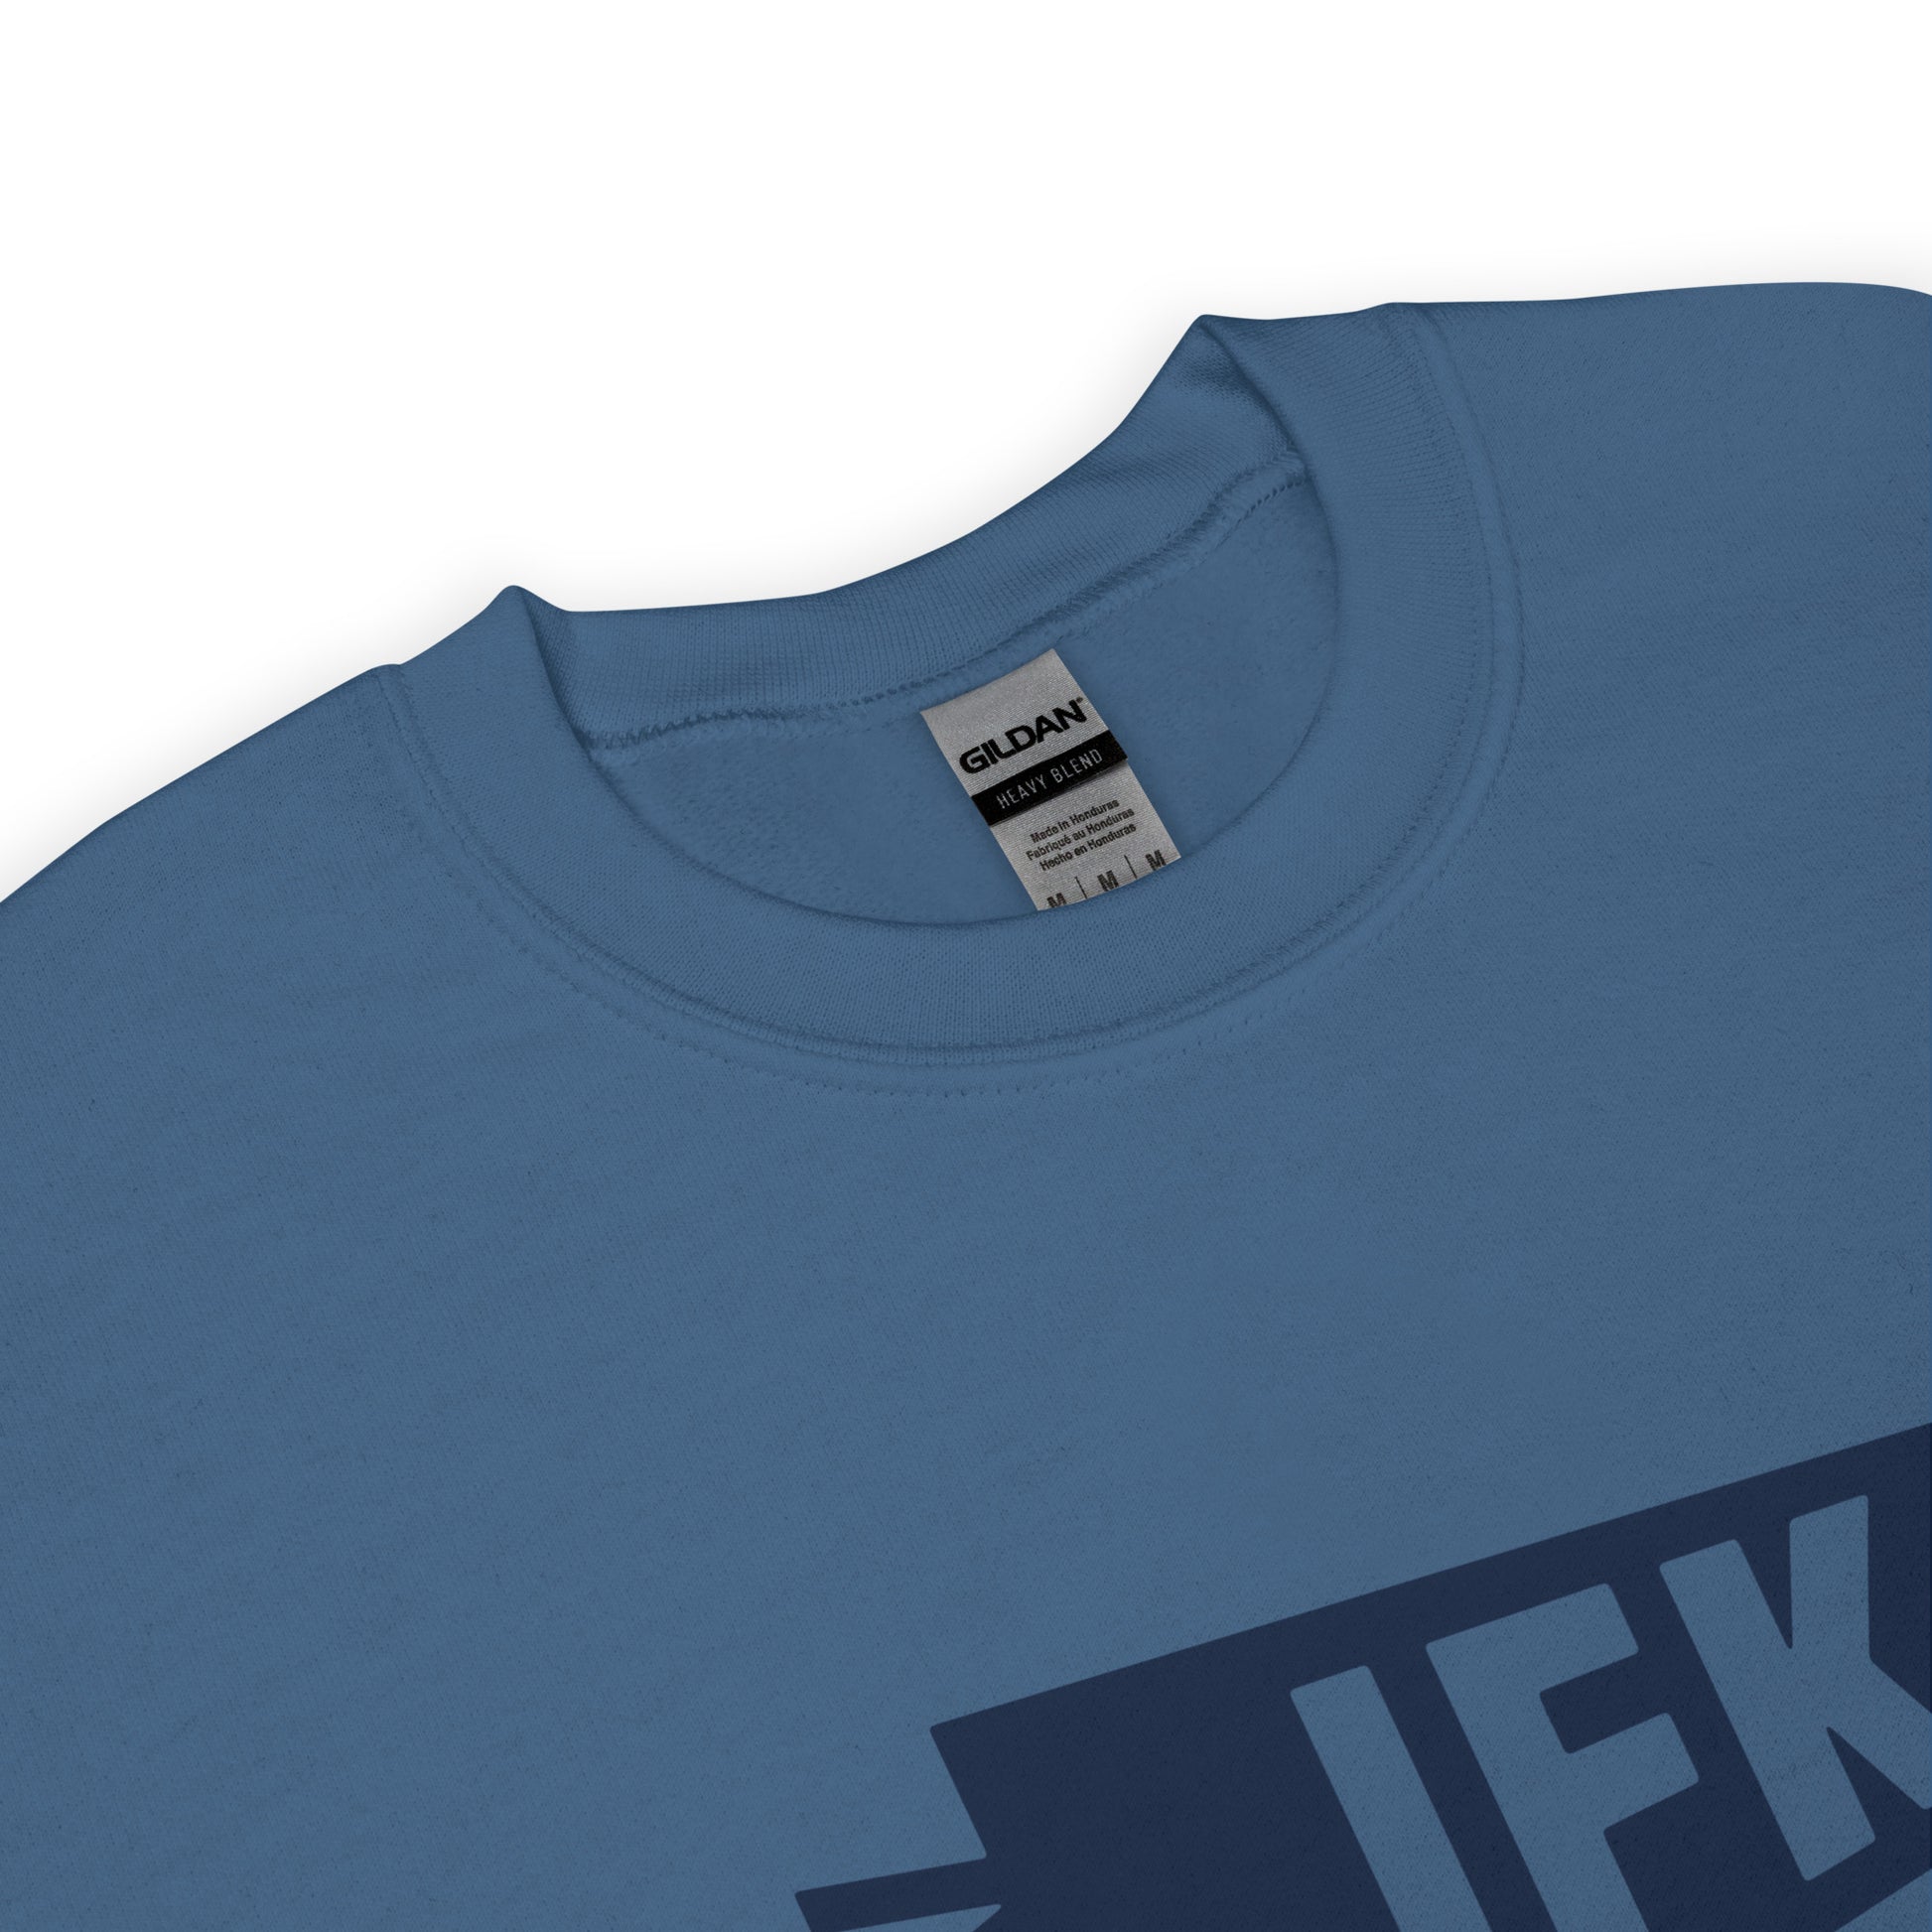 Airport Code Sweatshirt - Navy Blue Graphic • JFK New York City • YHM Designs - Image 04